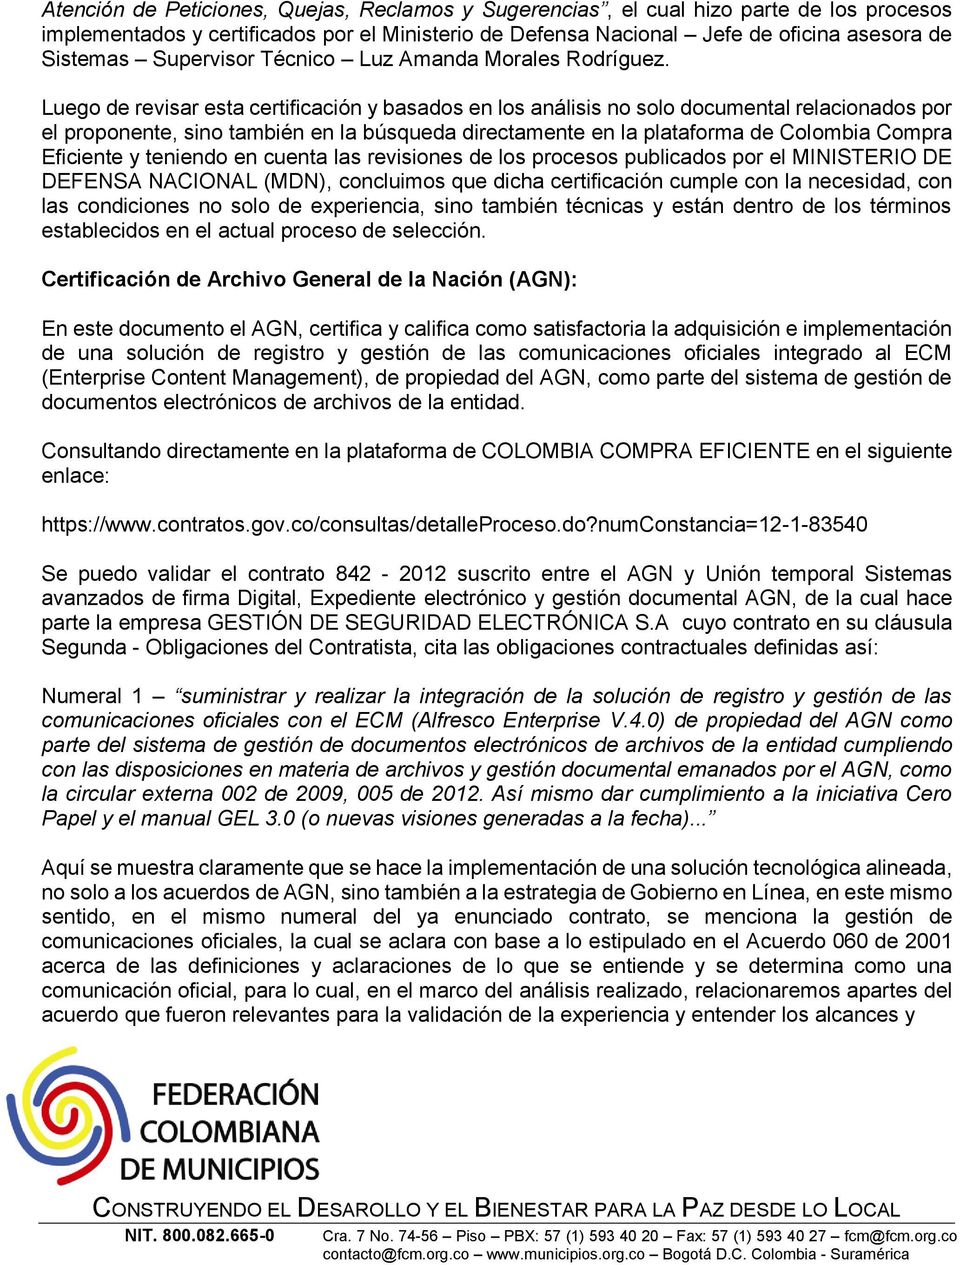 Luego de revisar esta certificación y basados en los análisis no solo documental relacionados por el proponente, sino también en la búsqueda directamente en la plataforma de Colombia Compra Eficiente